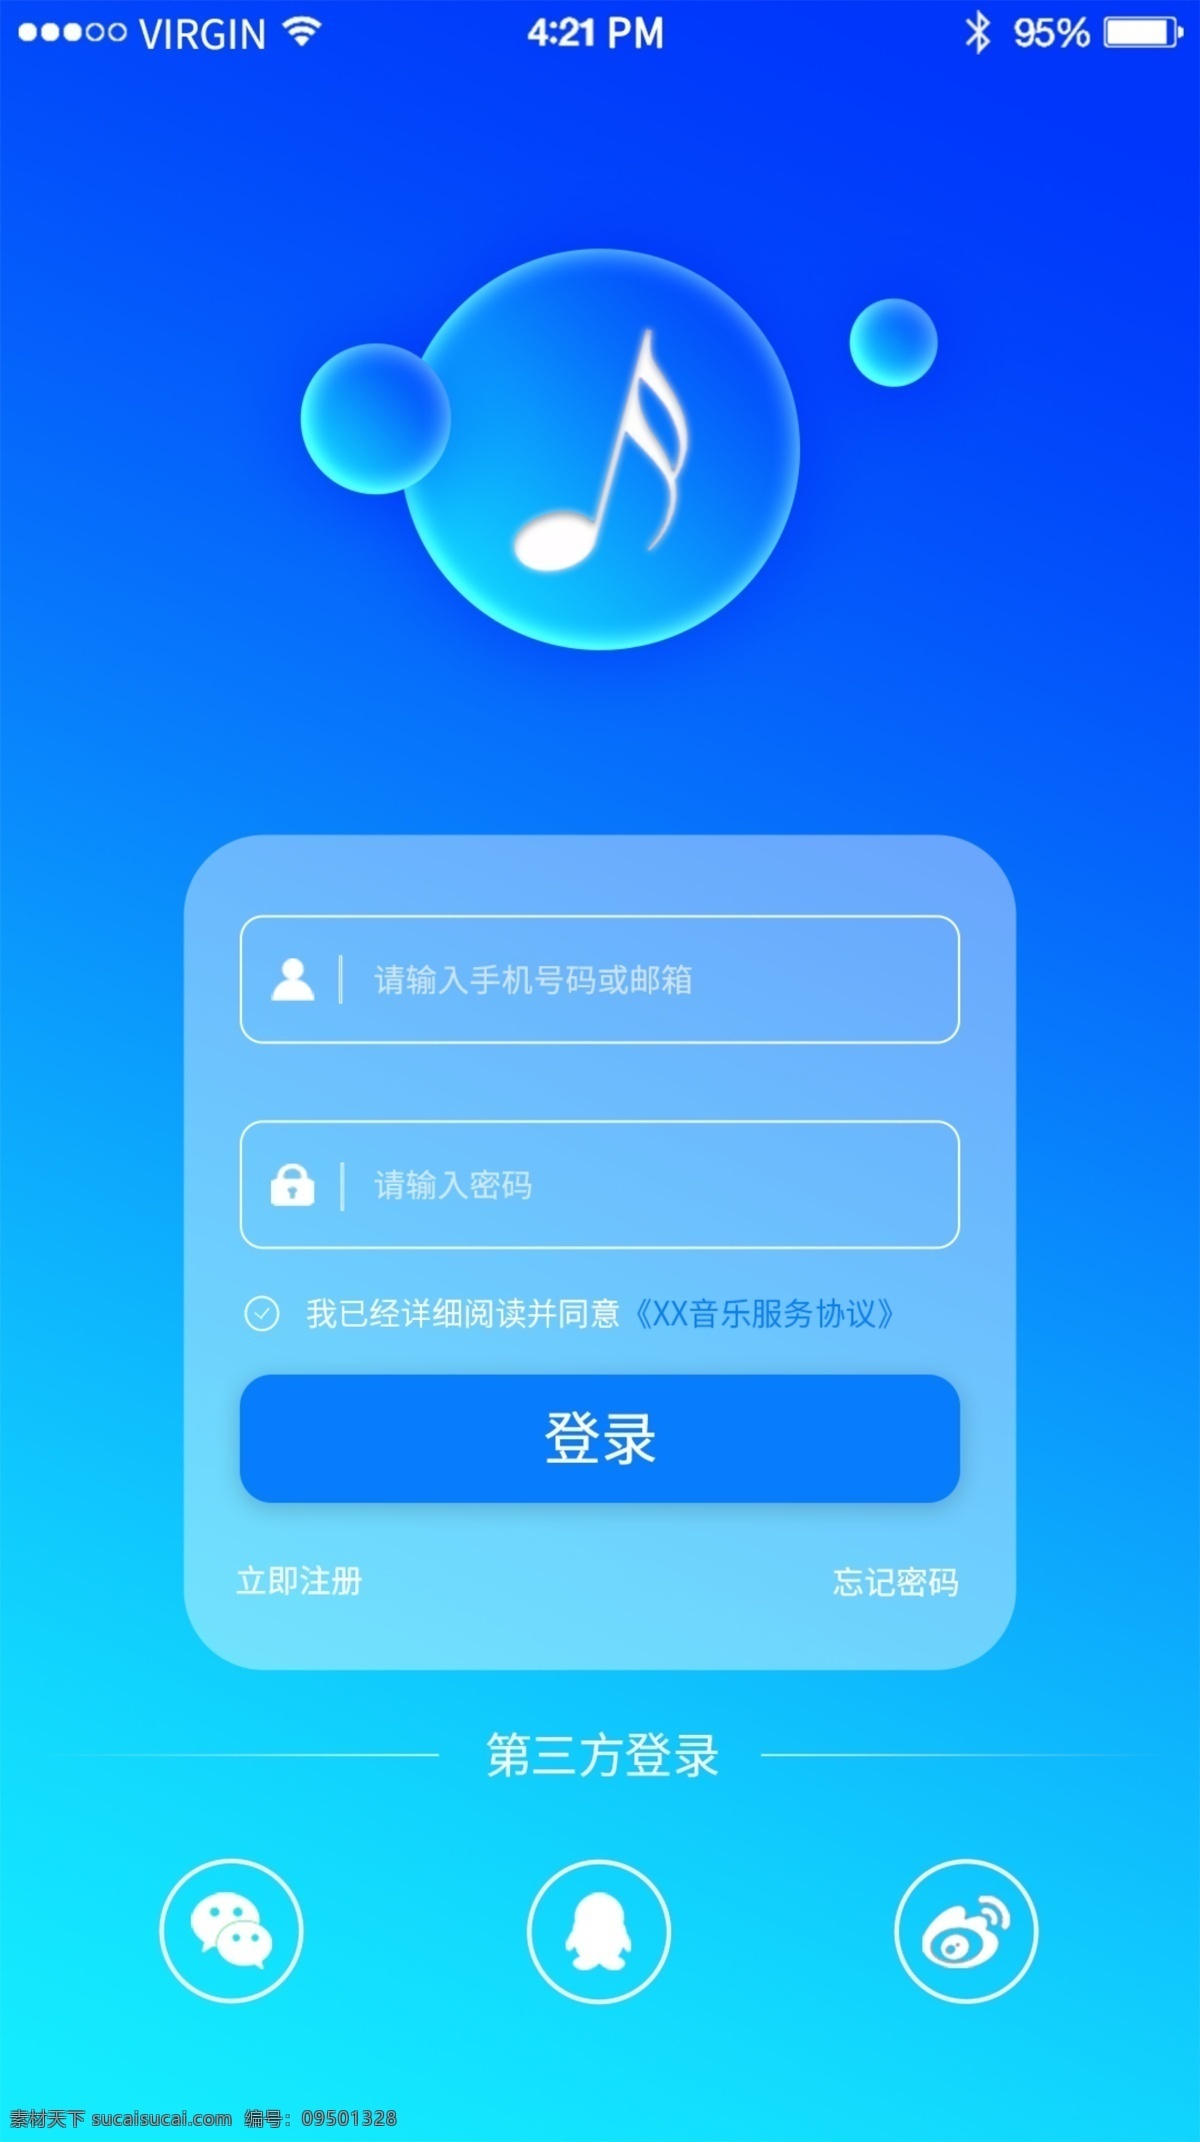 简约 清新 音乐 app 登录 注册 界面 小清新